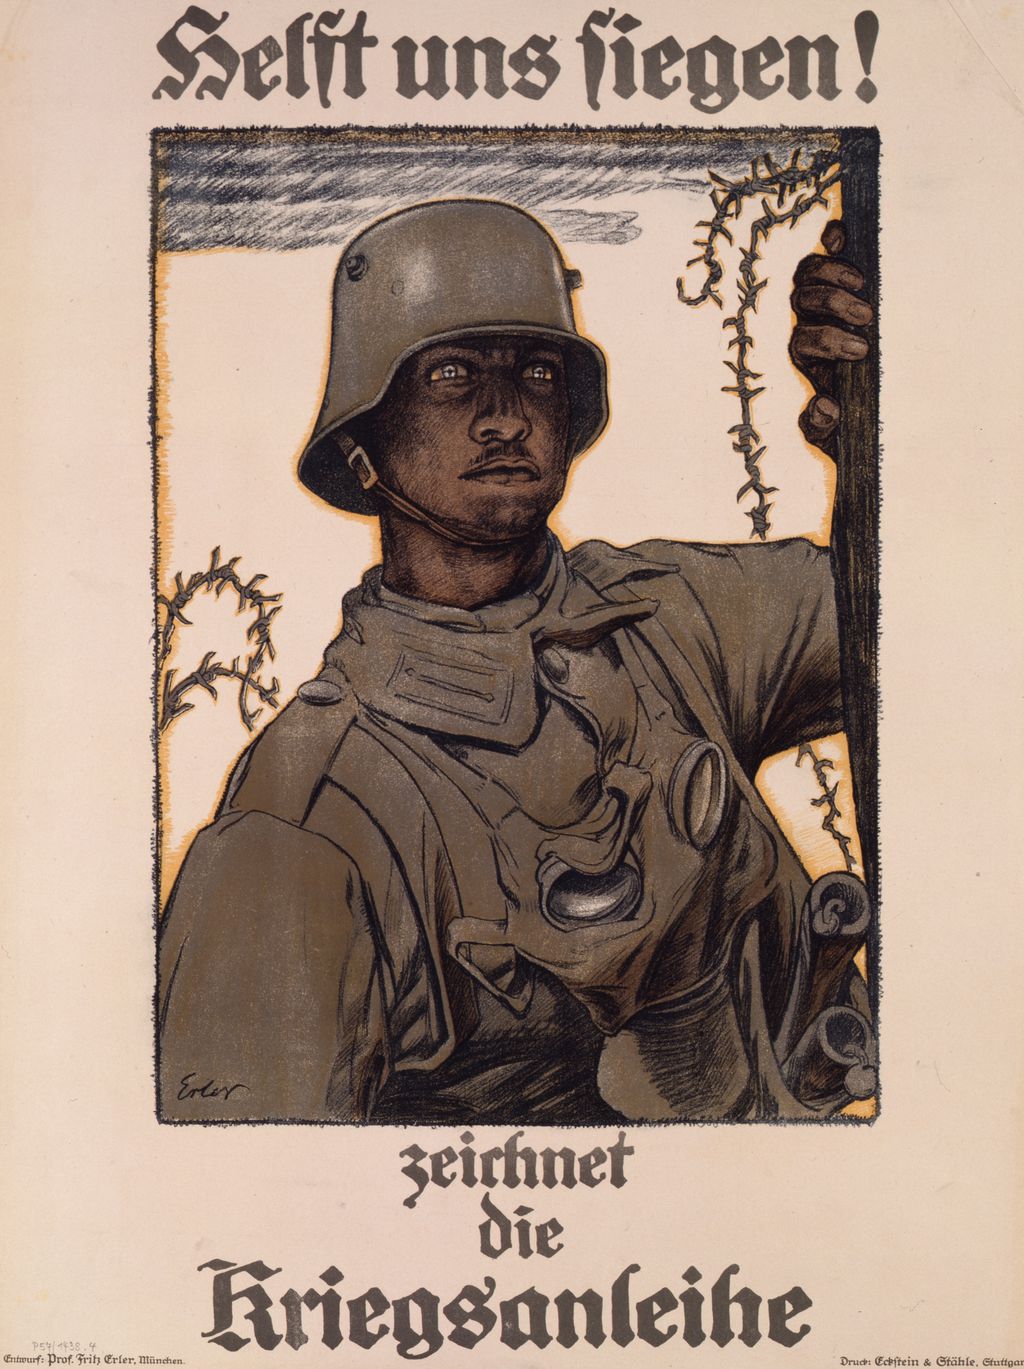 Plakat: "Helft uns siegen!", 1917